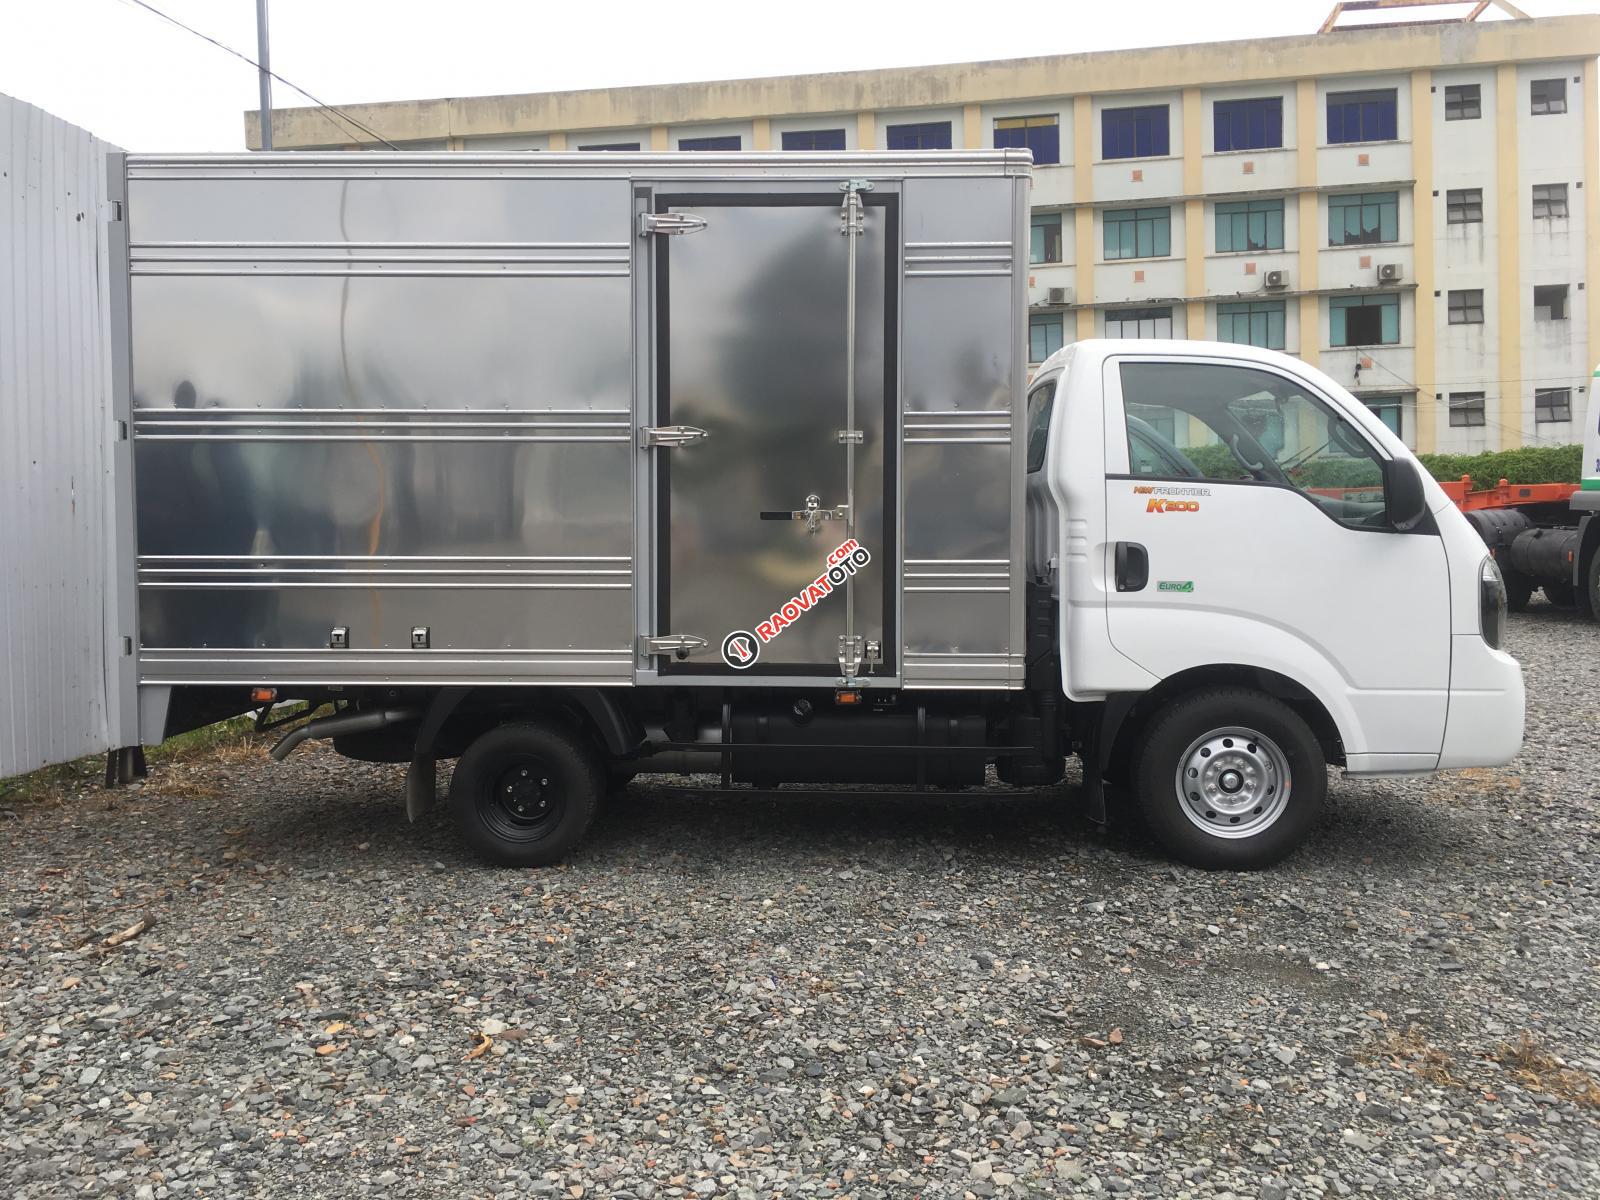 Bán xe tải Kia 2 tấn, sản xuất năm 2019 - Kia K200 trả góp tại Bình Dương. LH 0944.813.912-1